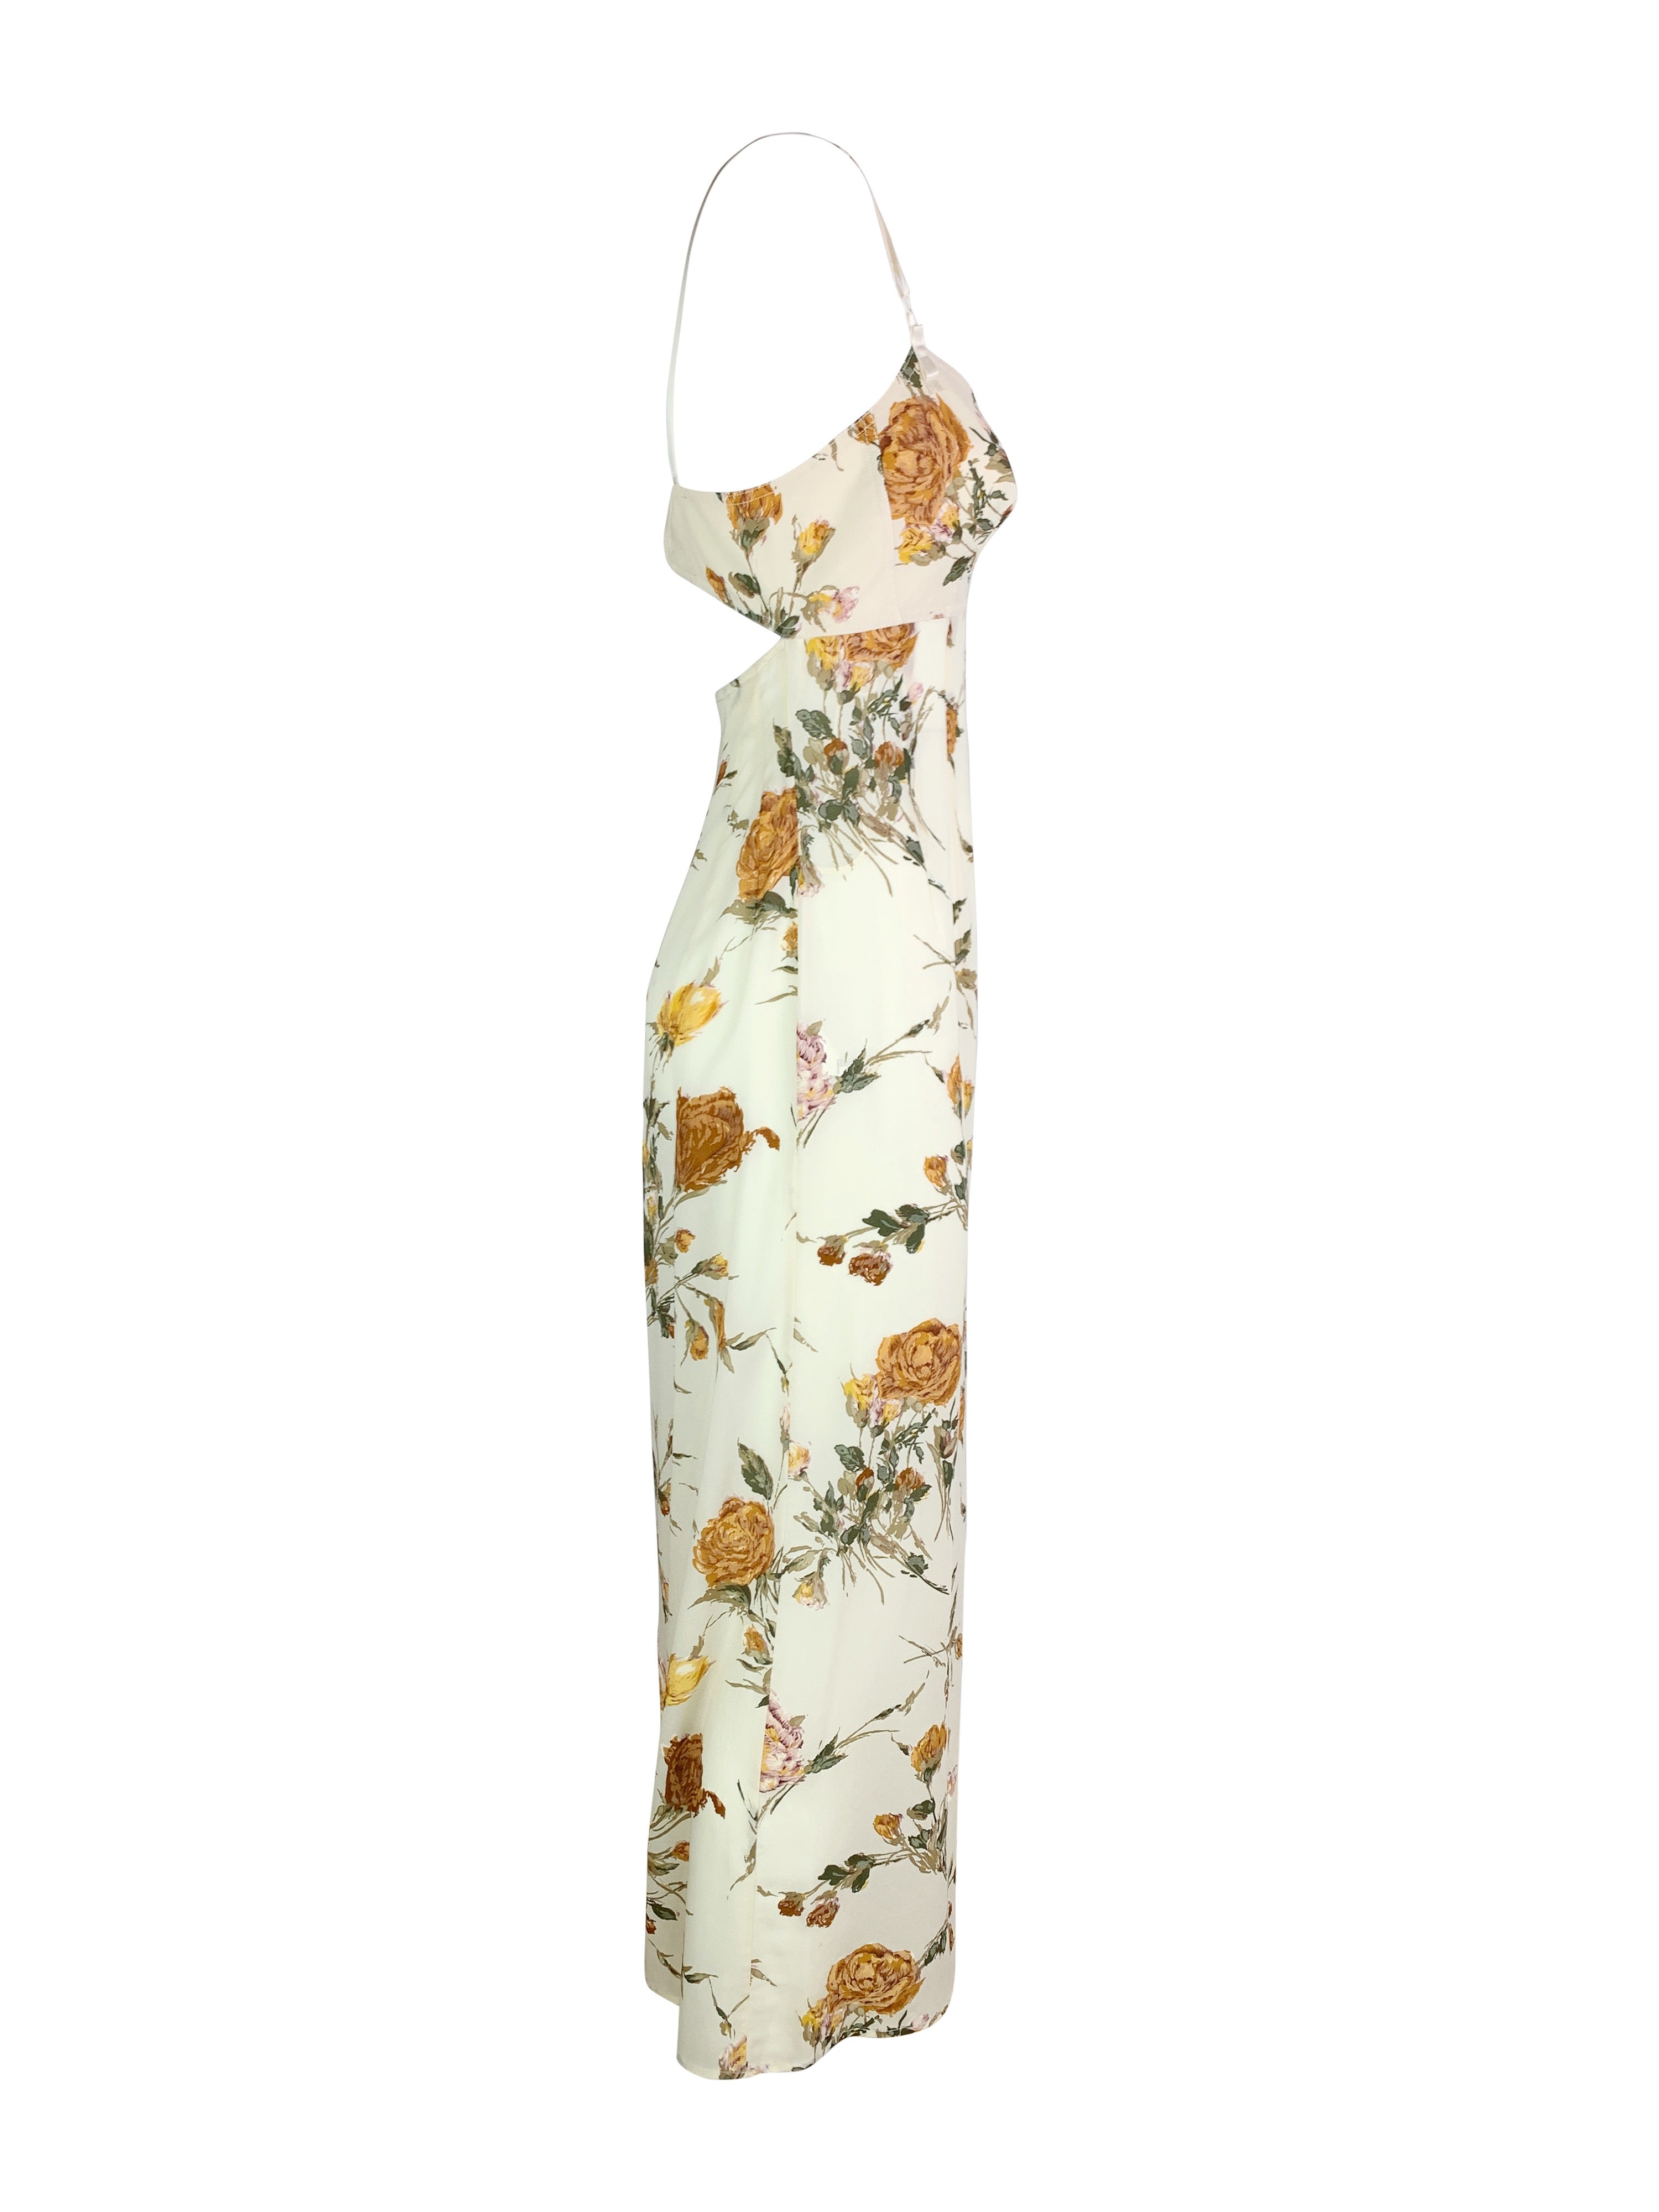 Dolce & Gabbana Spring 1997 Silk Dress